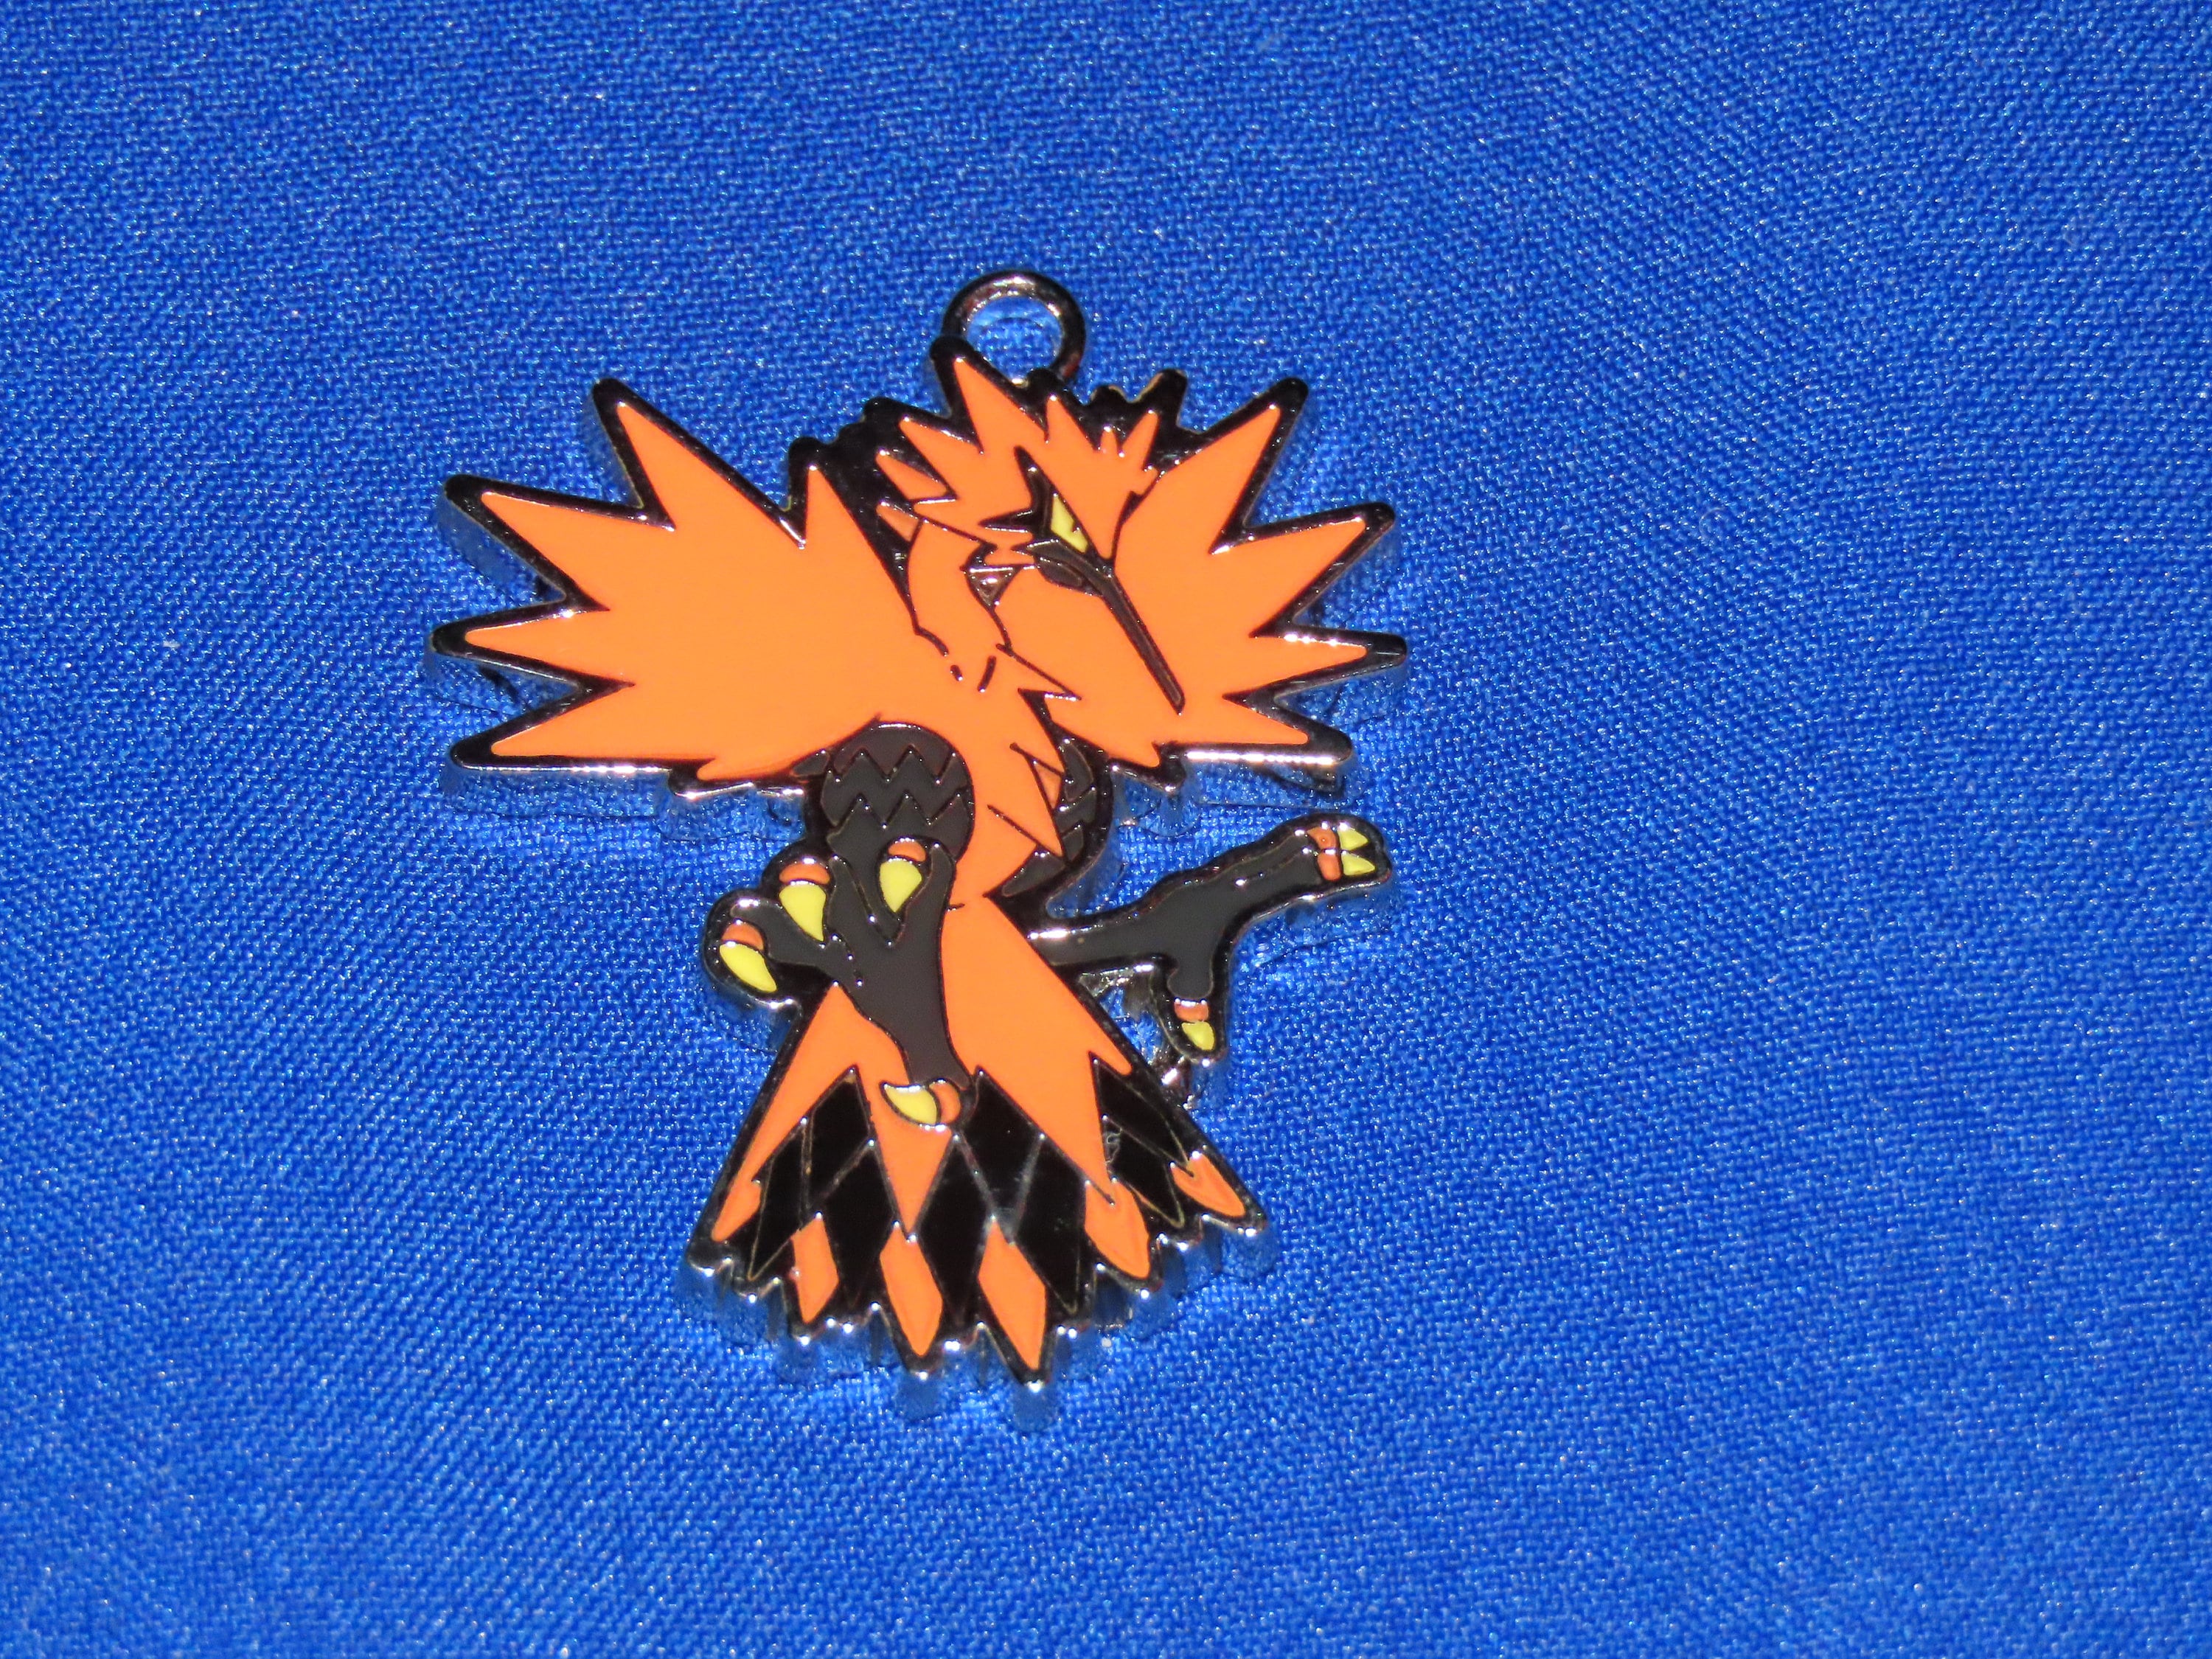 Zapdos Galar Shiny or Non ✨ 6 IV Competitive Customizable Pokémon